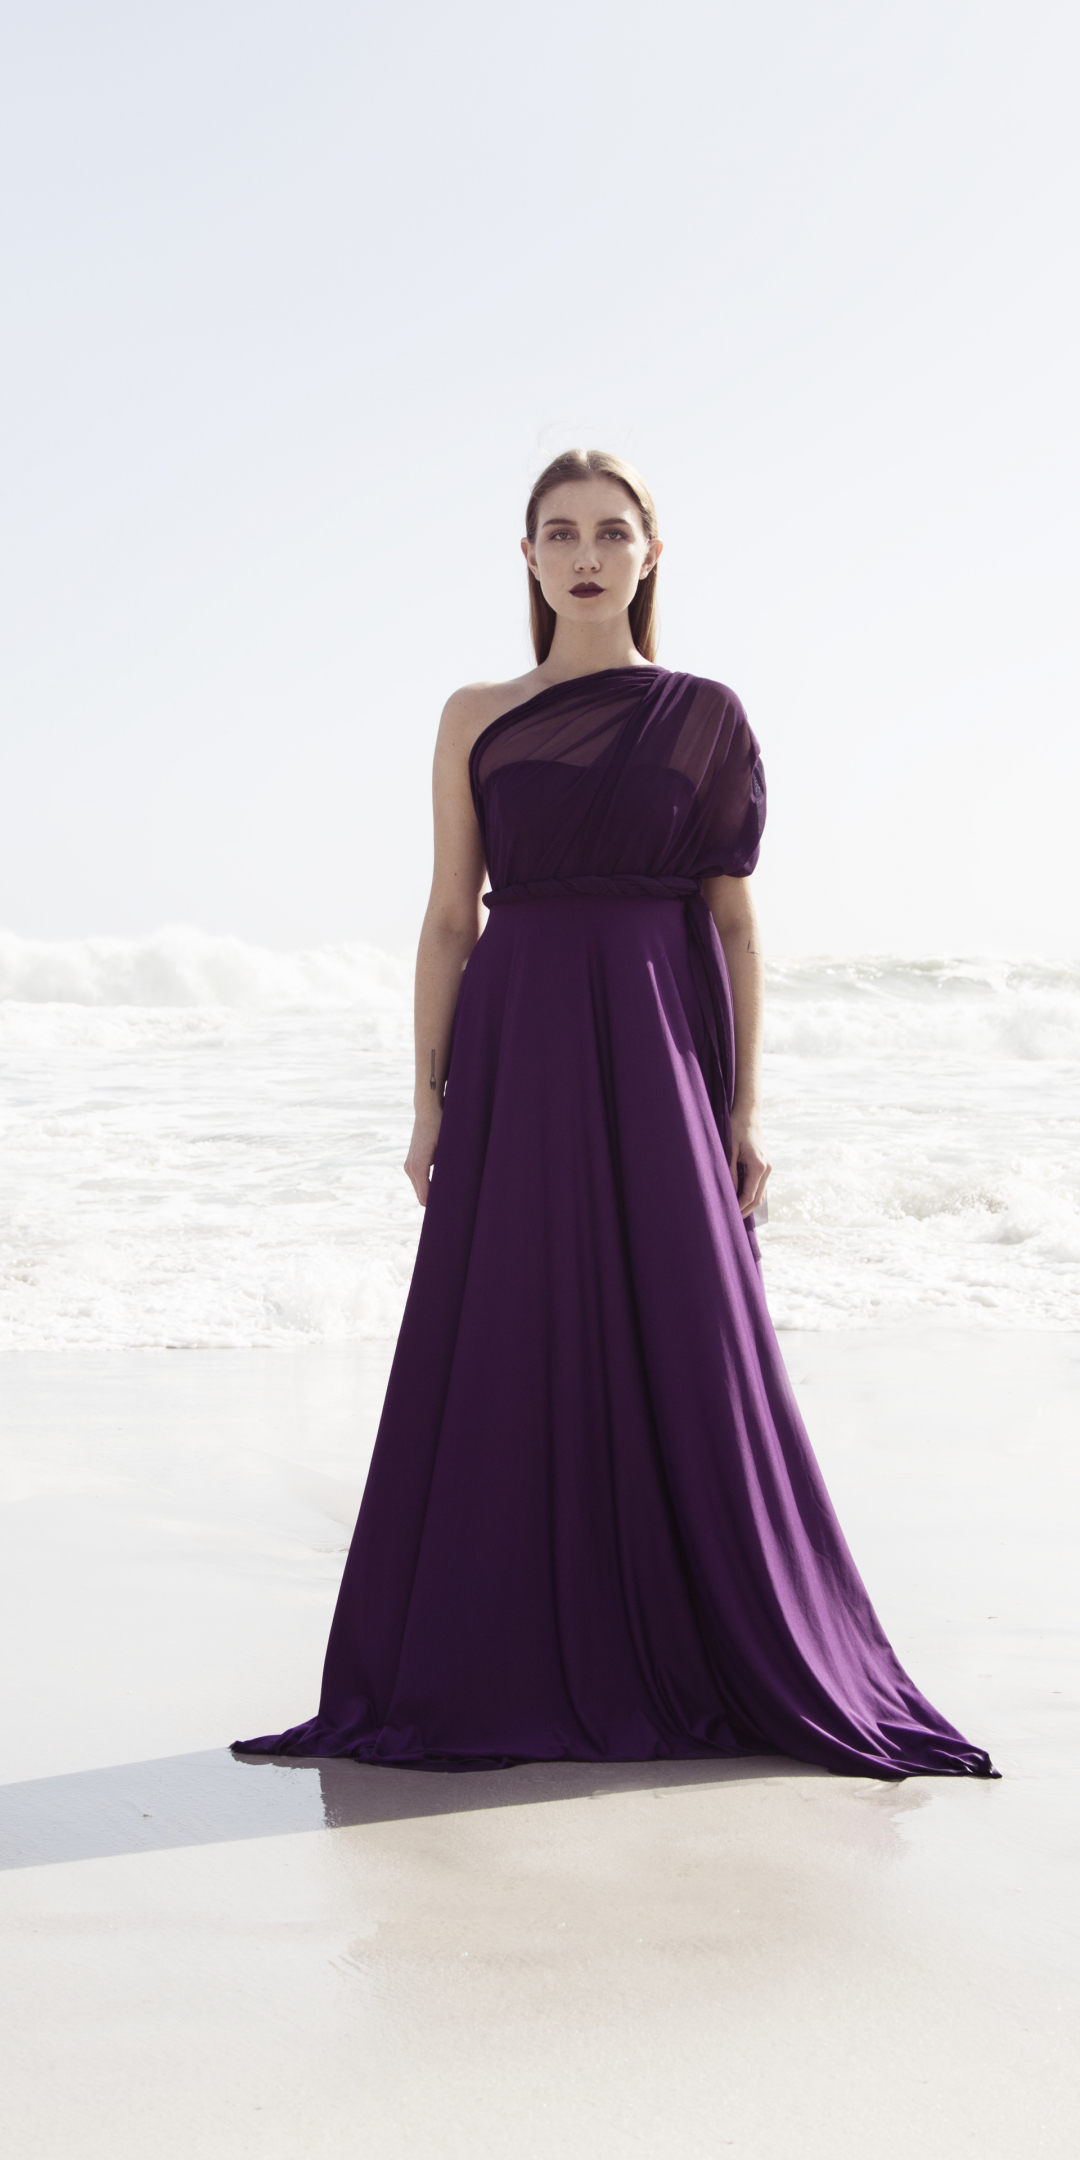 Purple gown, dress, girl, outdoors, 1080x2160 wallpaper